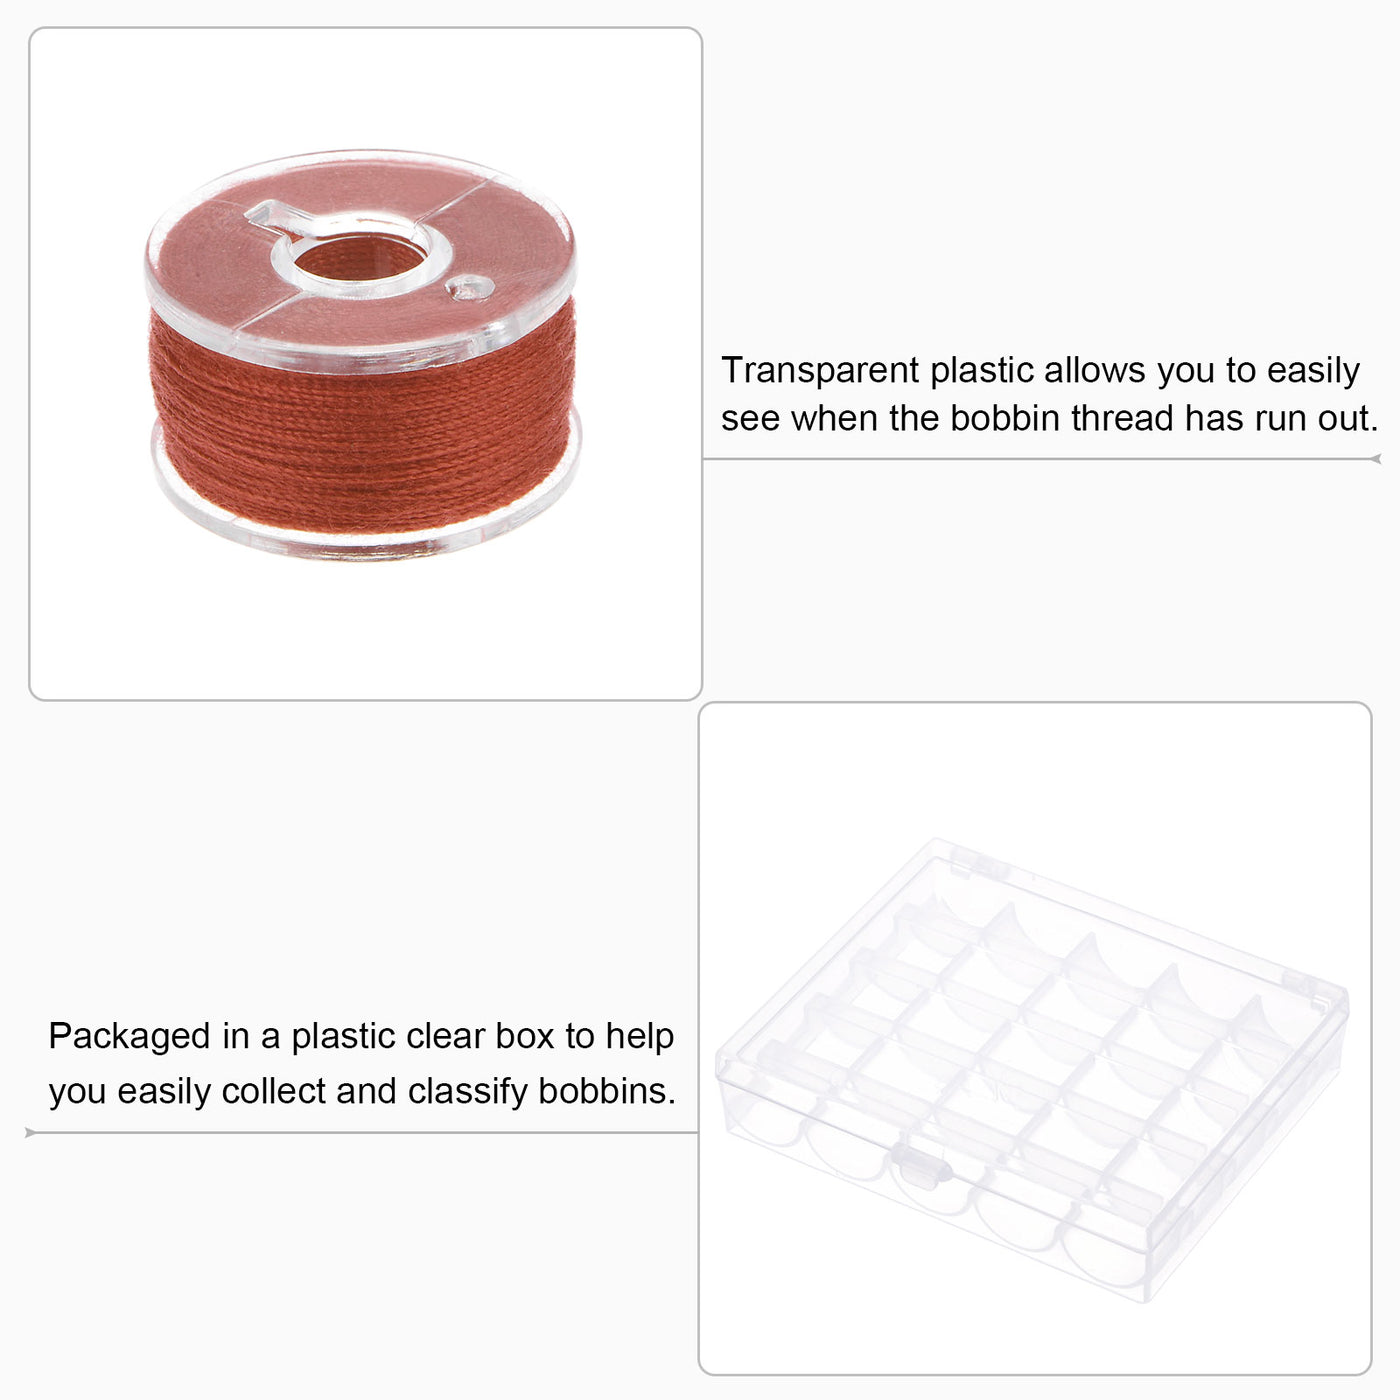 Harfington Prewound Sewing Bobbin Thread Set of 25pcs with Storage Plastic Case, Dark Red